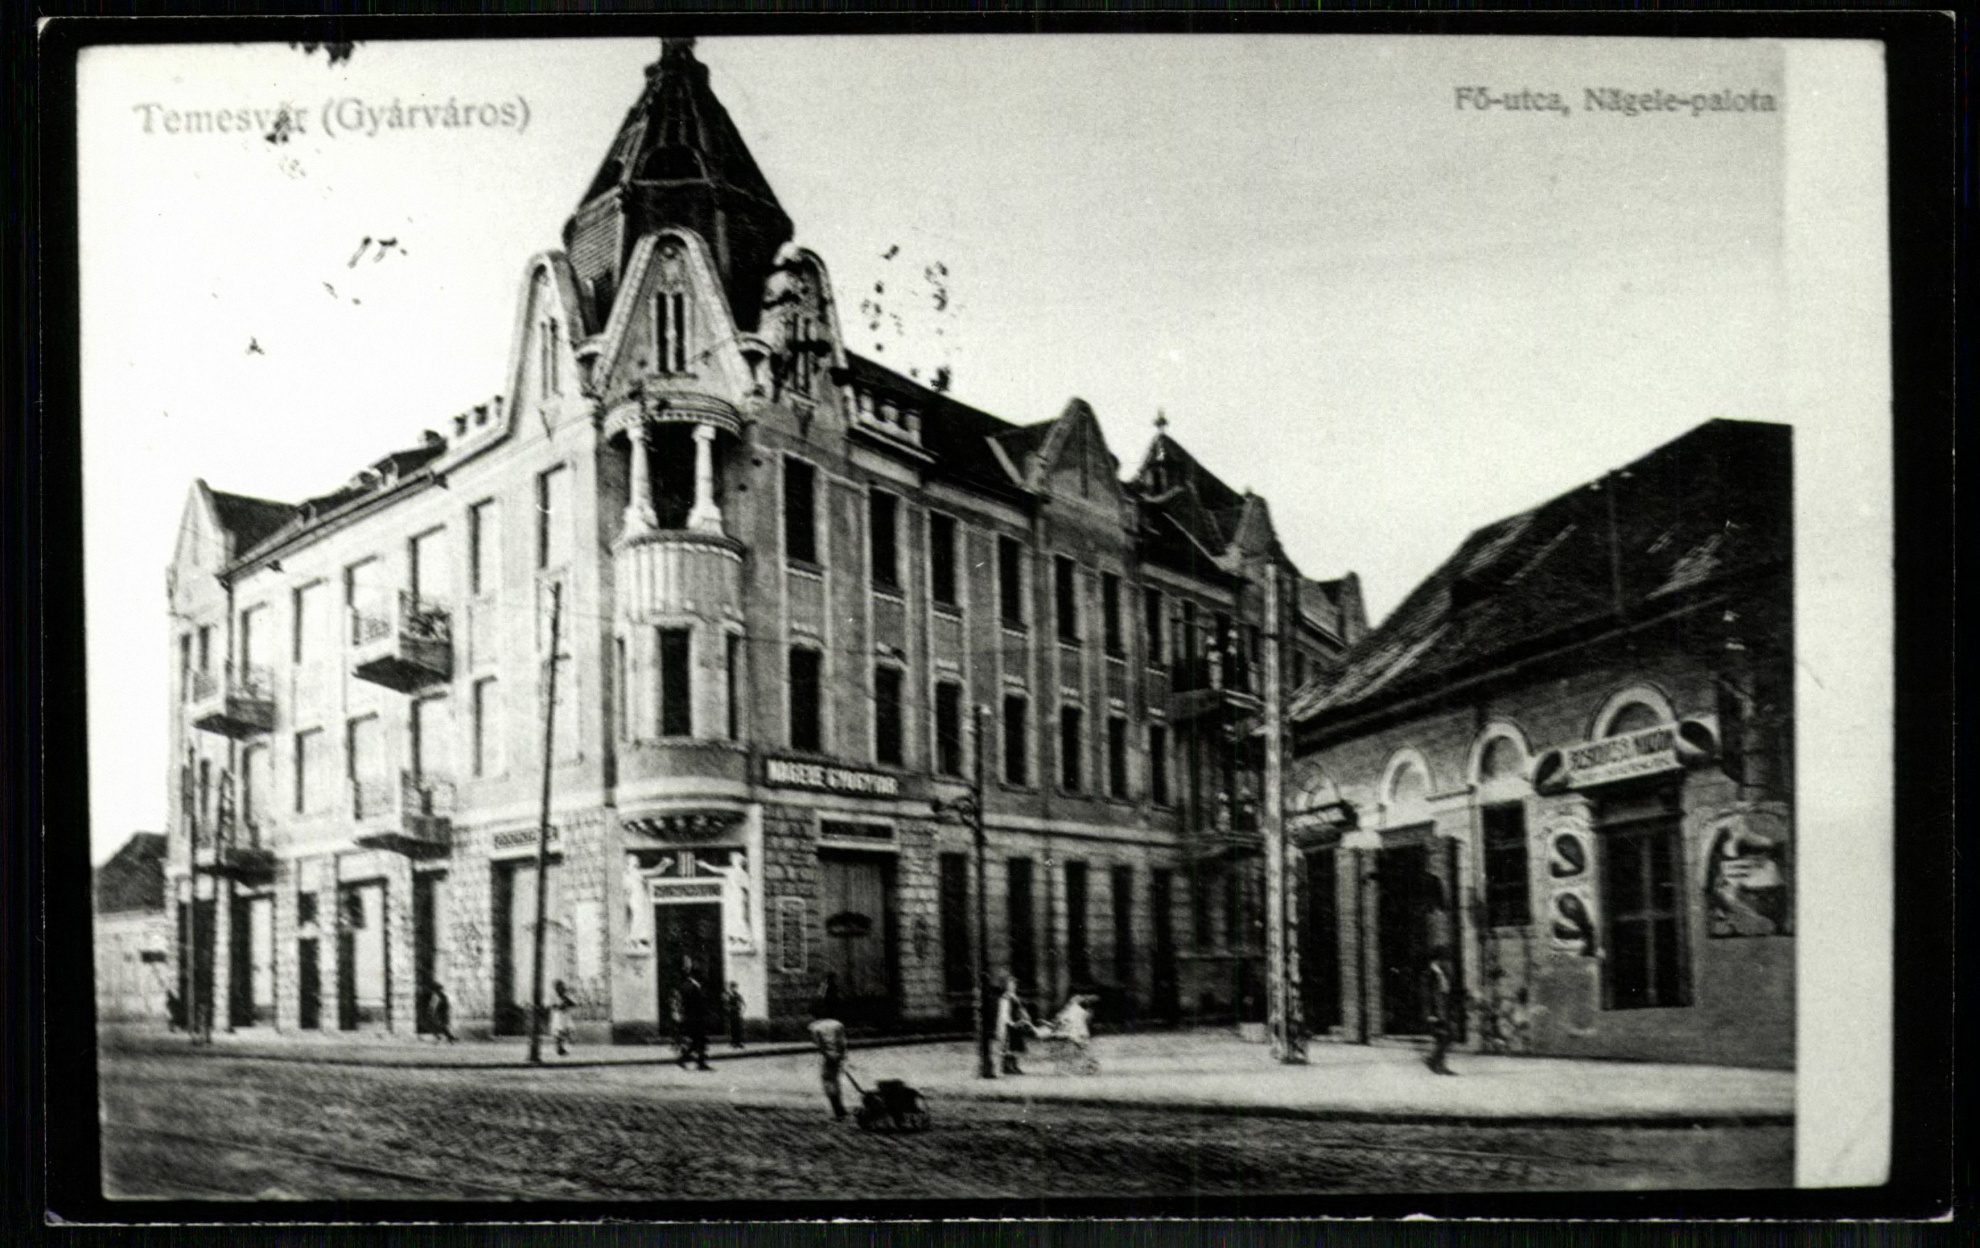 Temesvár; (Gyárváros) Fő utca, Nägele palota (Magyar Kereskedelmi és Vendéglátóipari Múzeum CC BY-NC-ND)